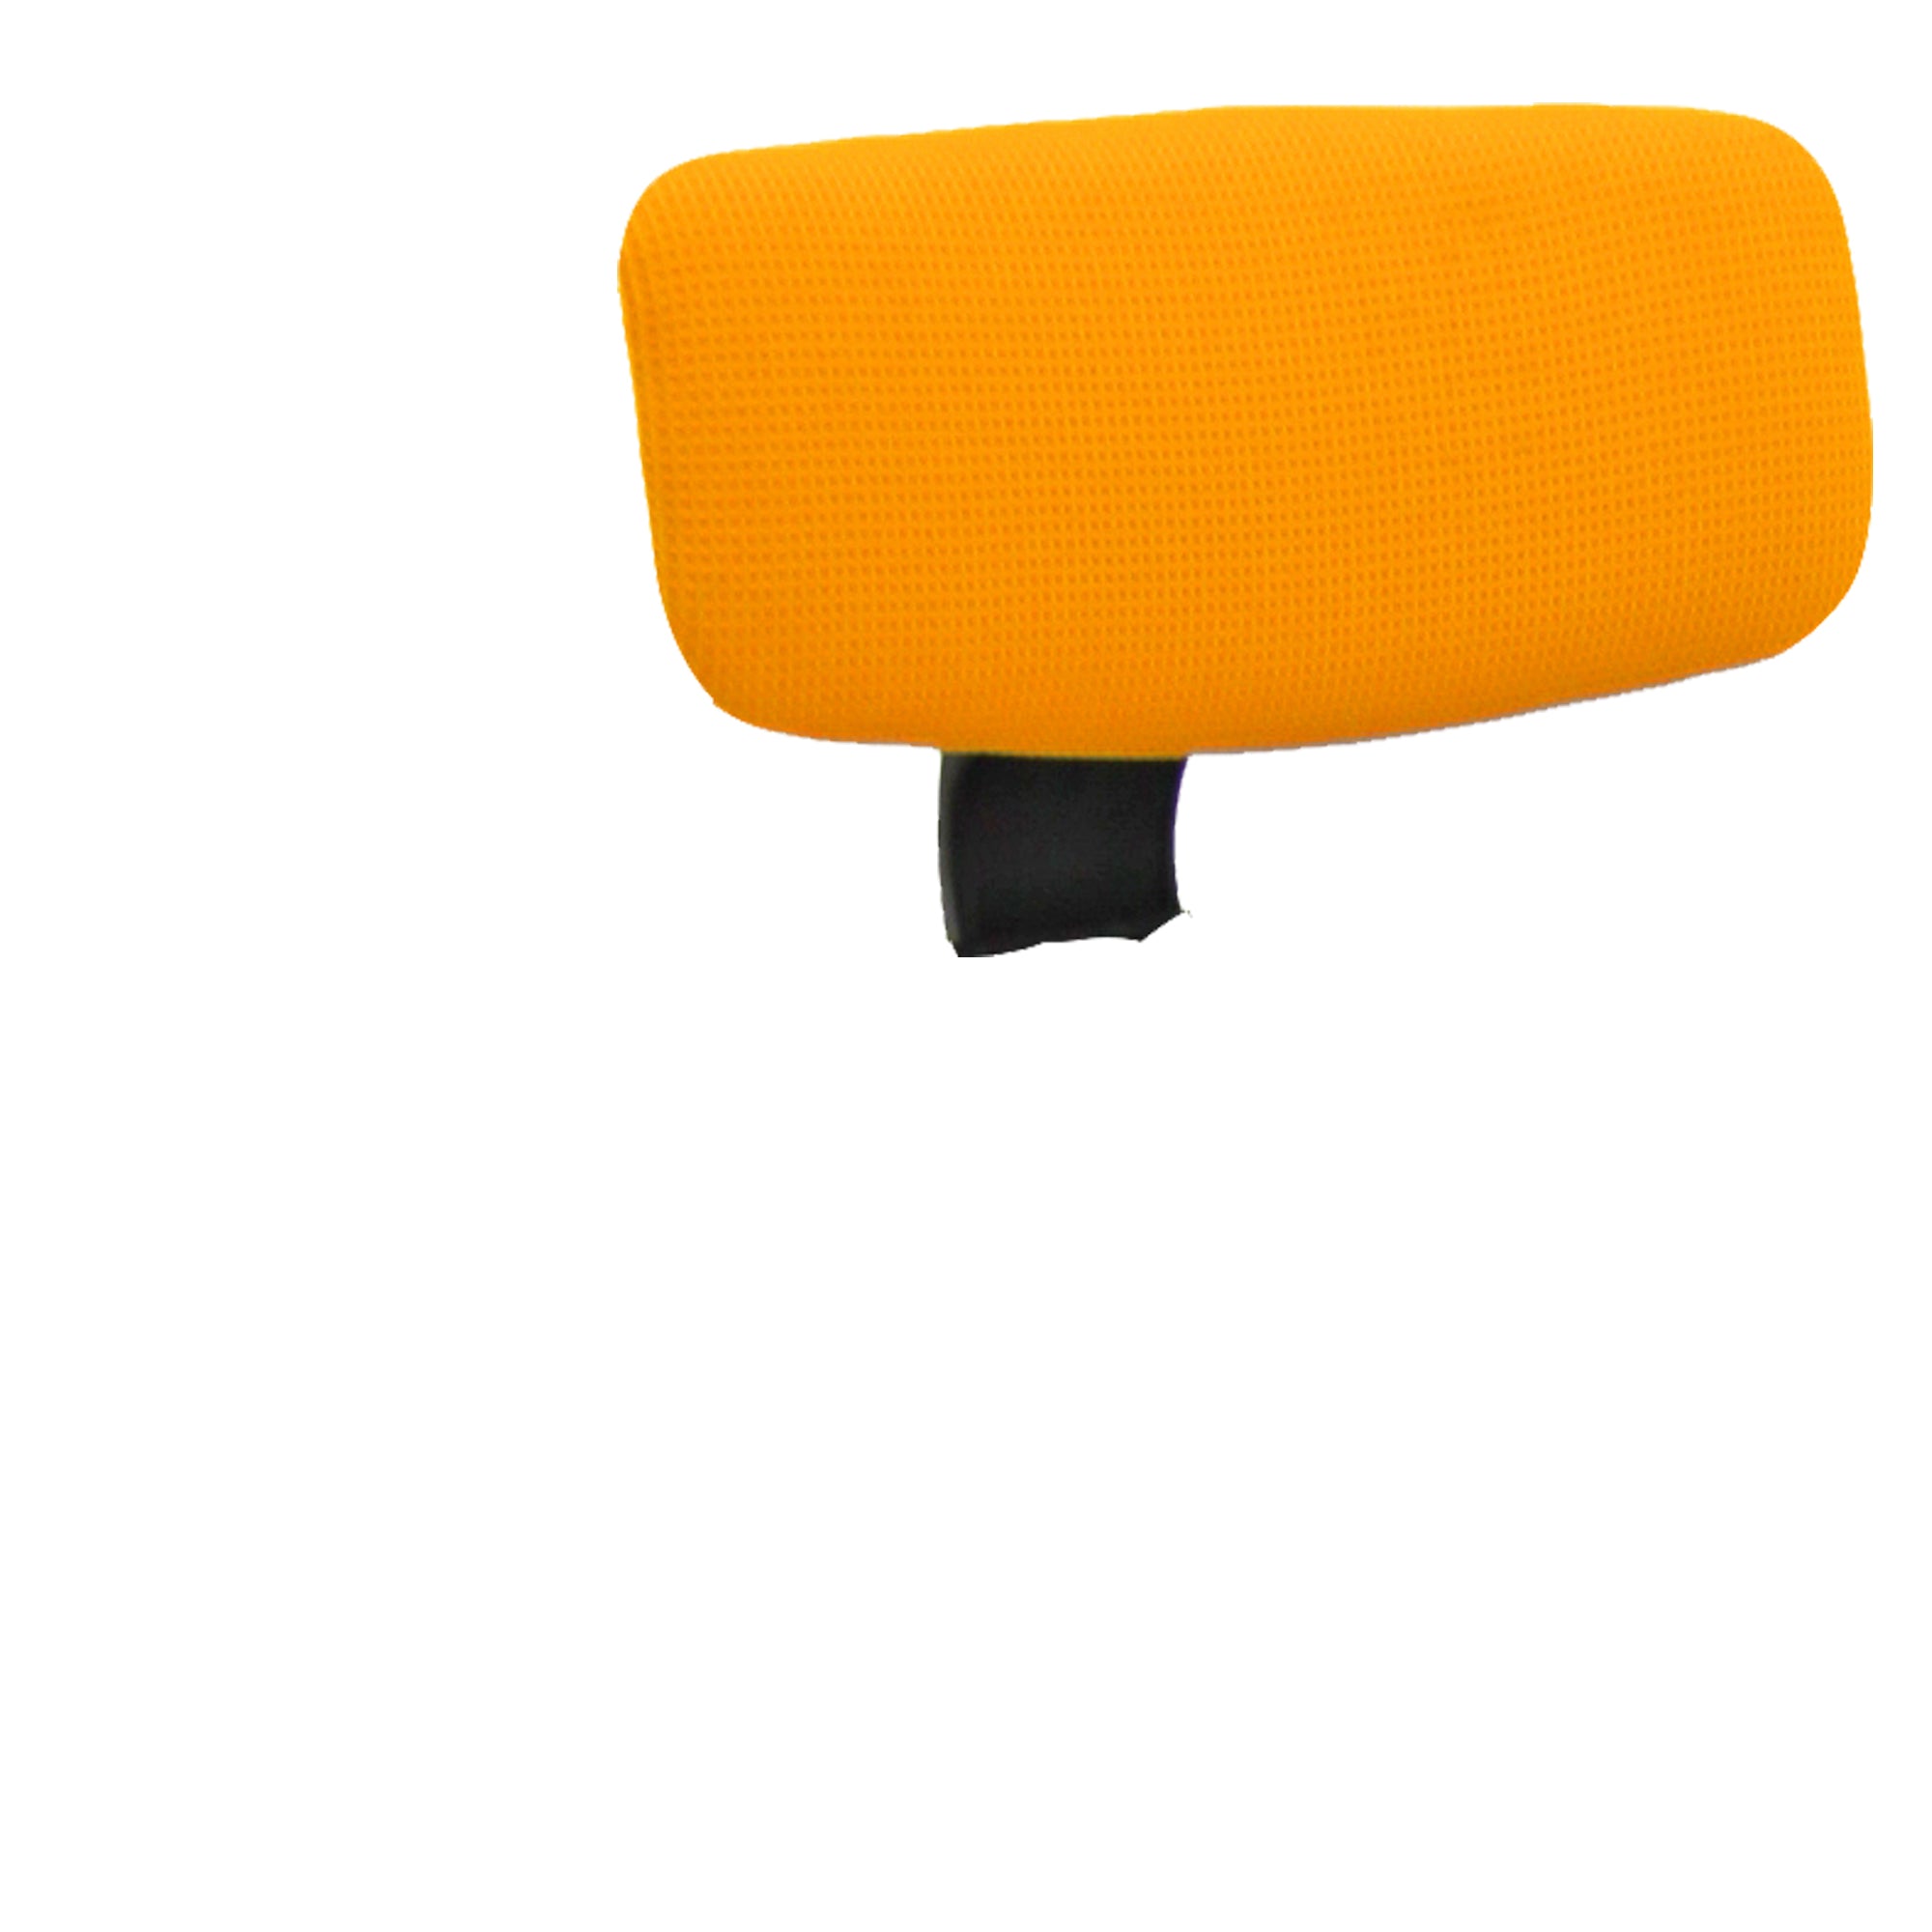 unisit-poggiatesta-arancio-seduta-ergonomica-kemper